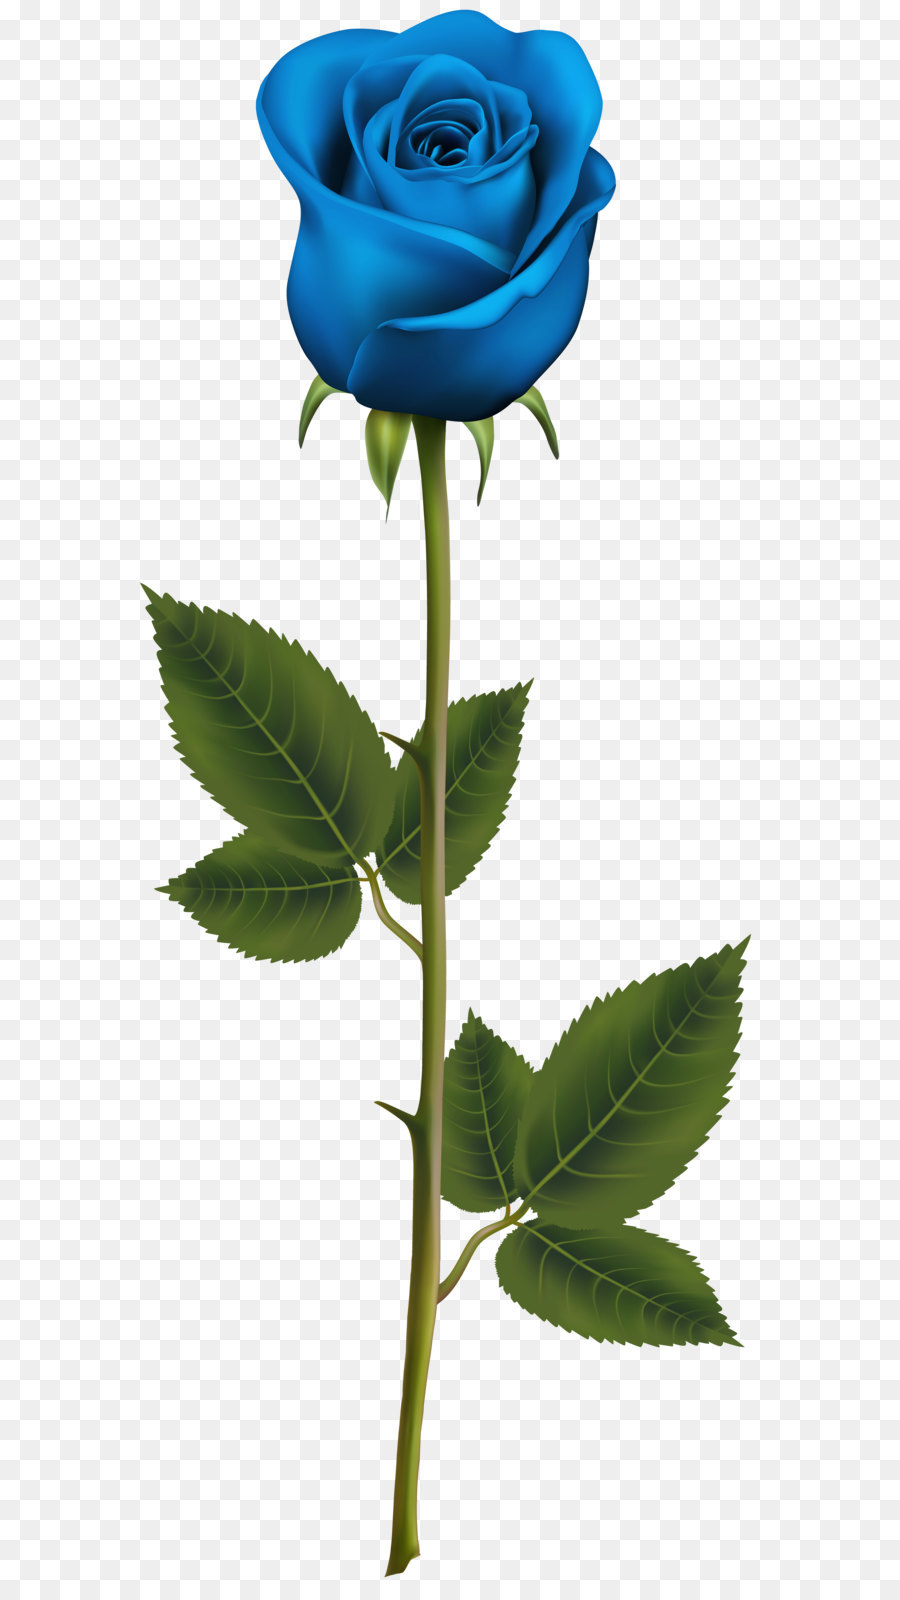 Blue rose Flower - Blue Rose with Stem PNG Transparent Clip Art Image png download - 3277*8000 - Free Transparent Blue Rose png Download.